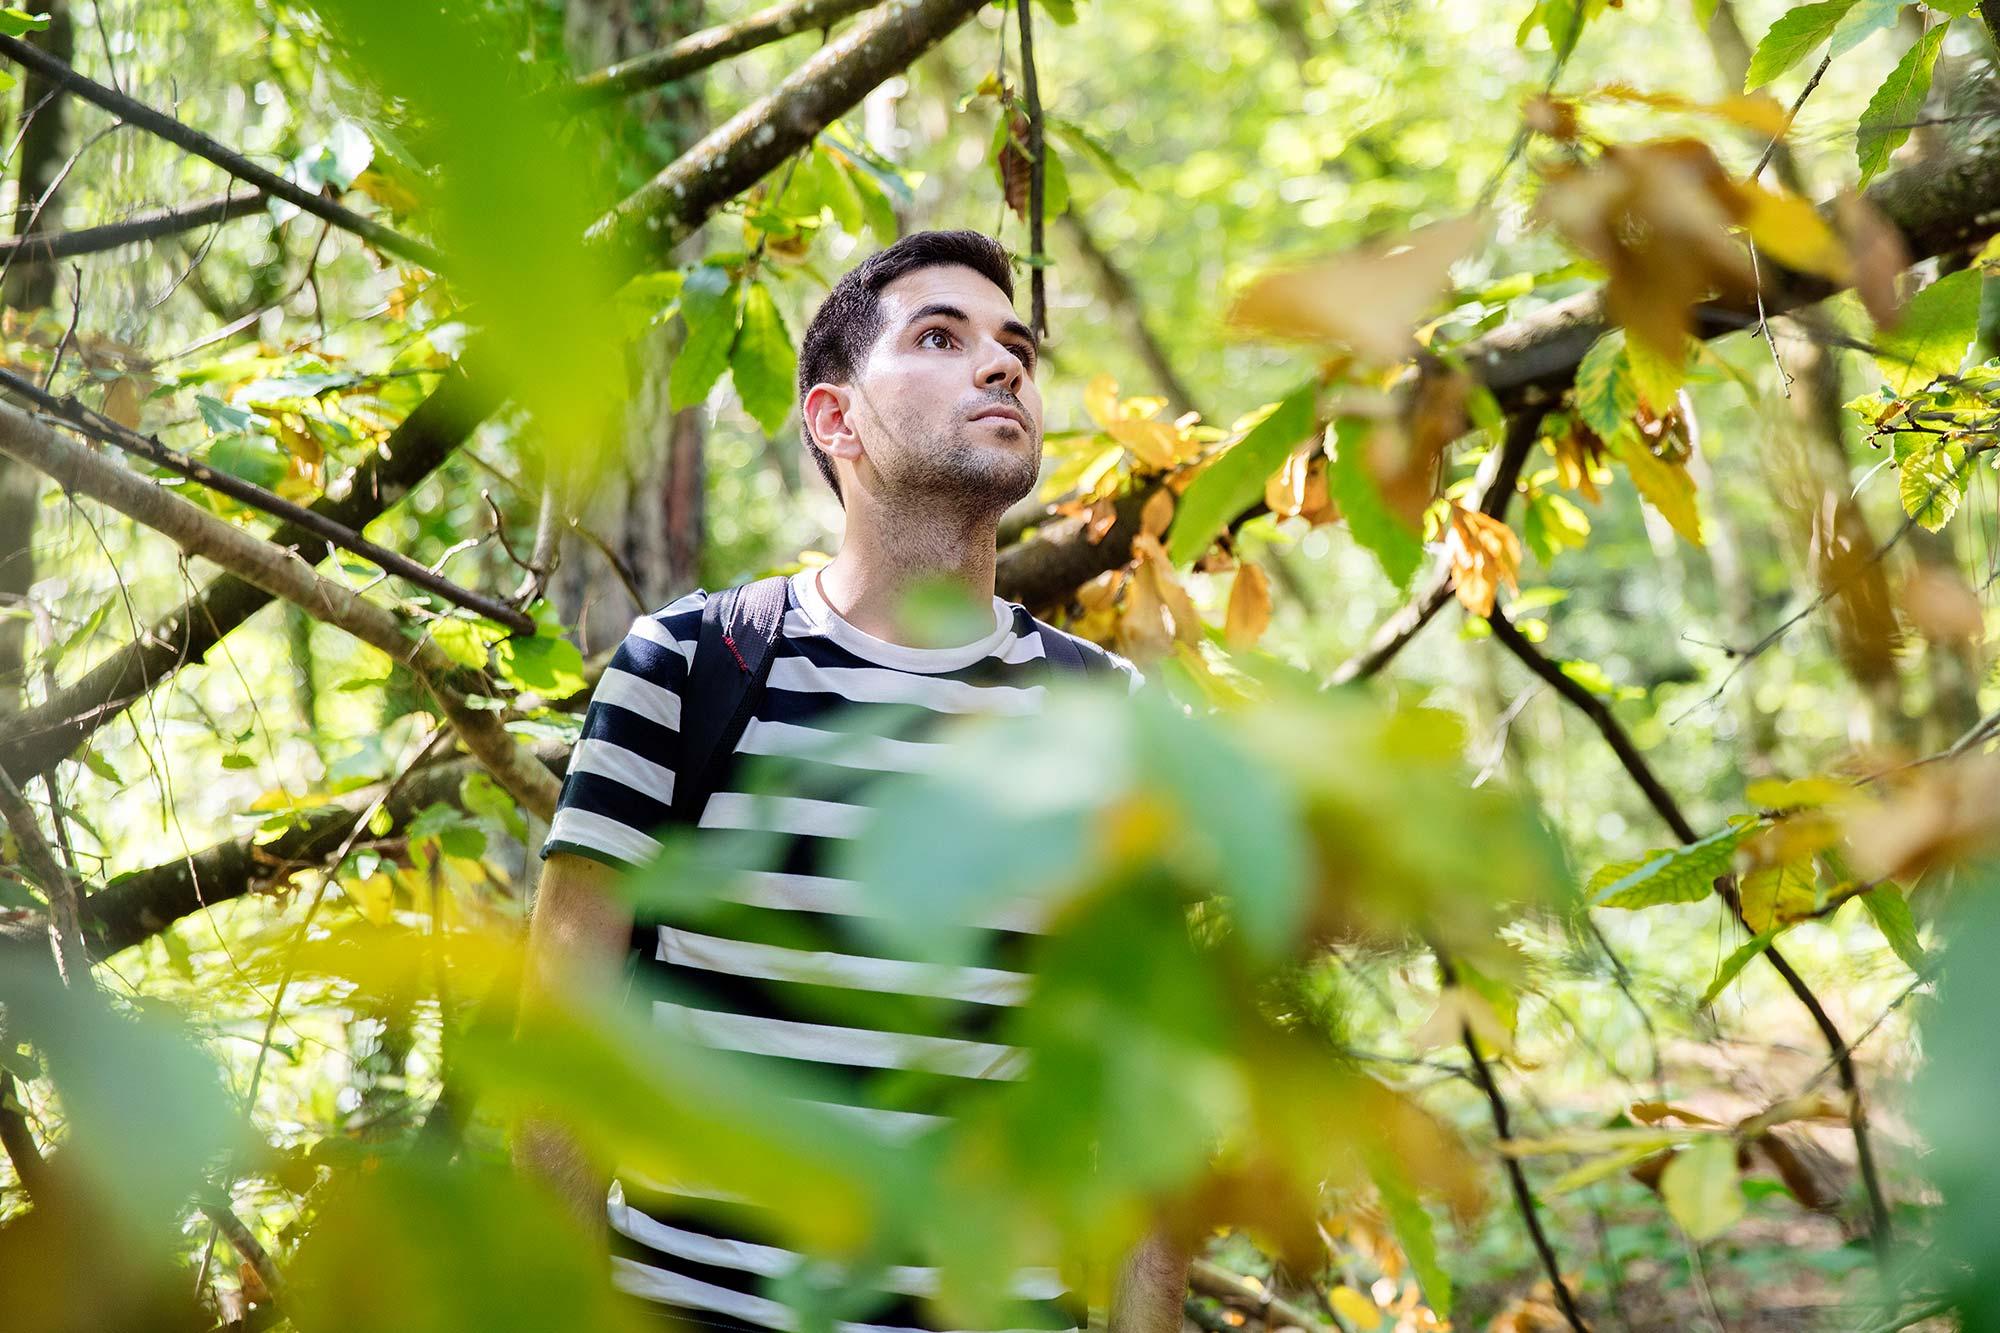 Mikel Urquiza metsän keskellä katse ylöspäin suunnattuna. Ympärillä paljon vihreitä puiden oksia.